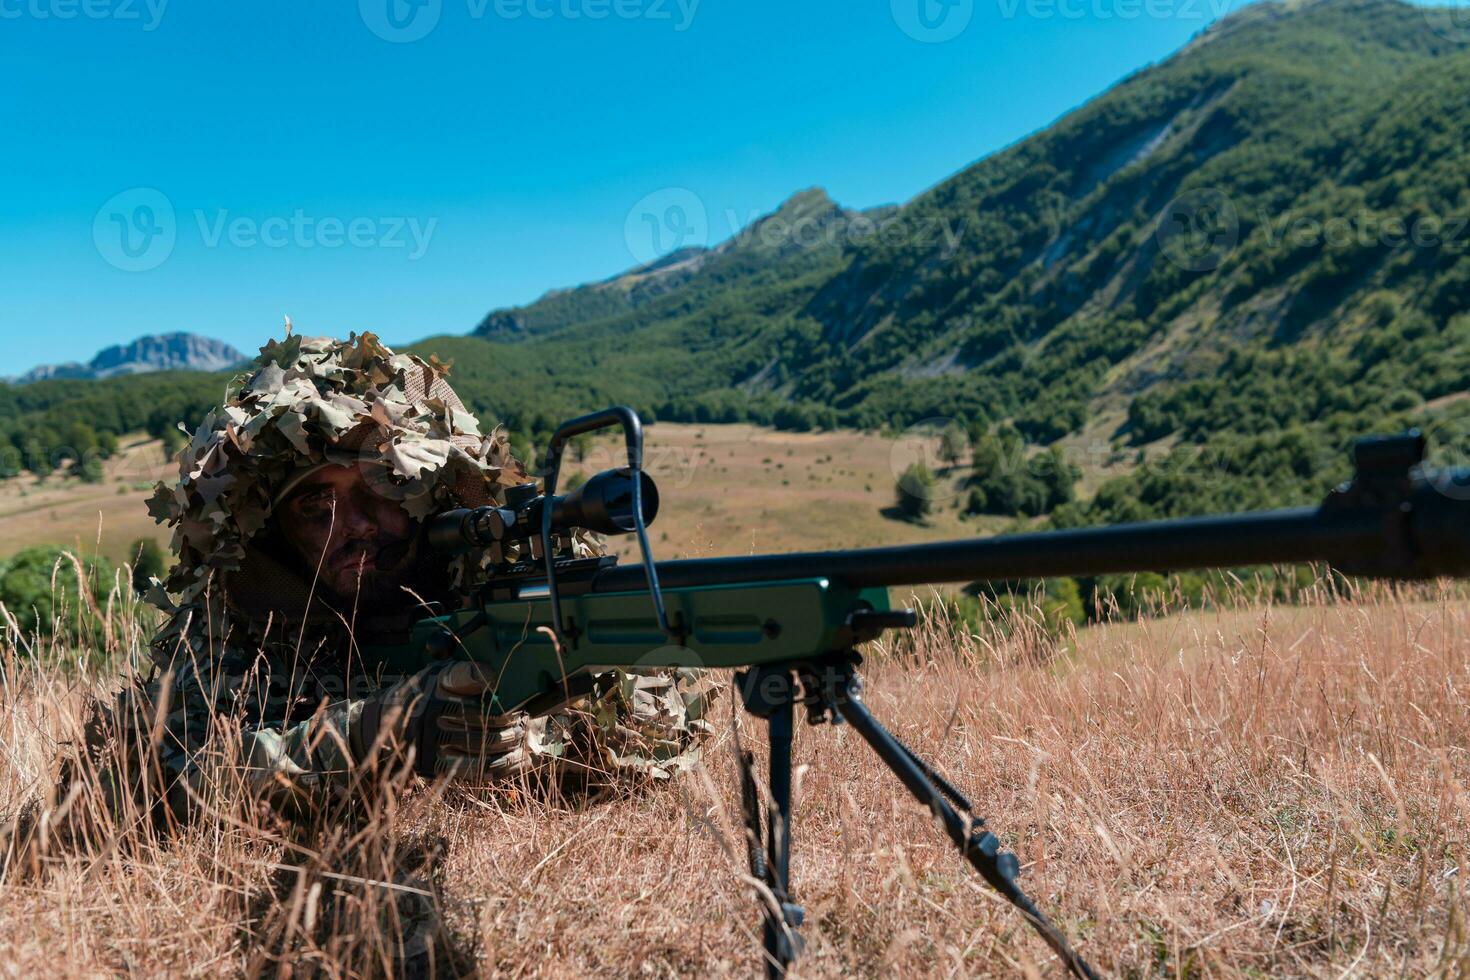 exército soldado segurando Franco atirador rifle com escopo e visando dentro floresta. guerra, exército, tecnologia e pessoas conceito foto